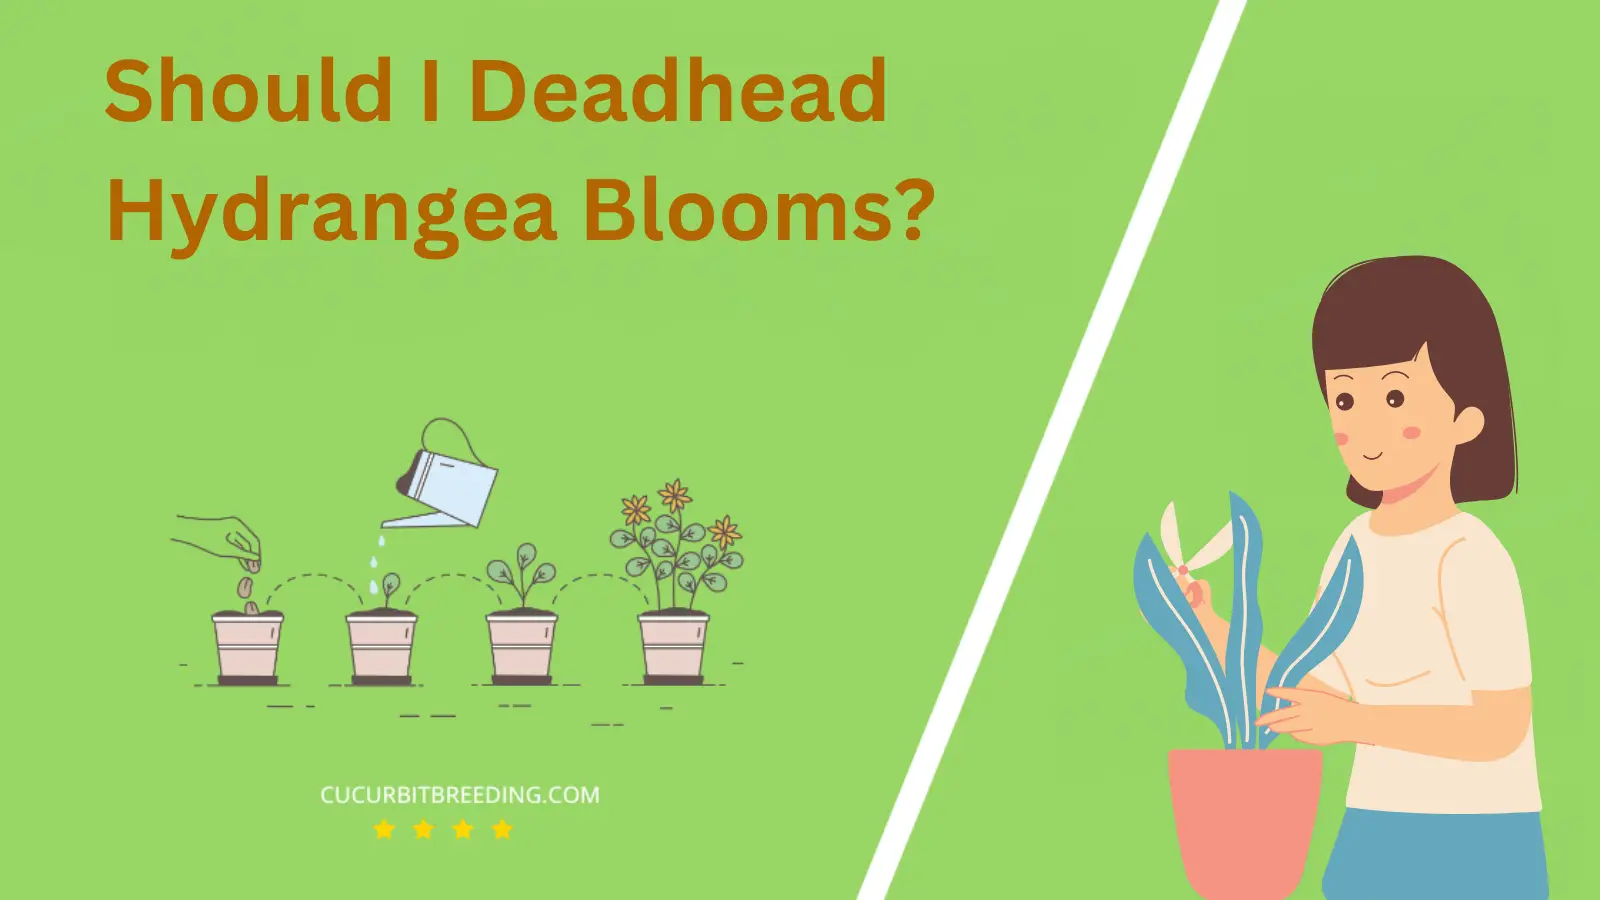 Should I Deadhead Hydrangea Blooms?